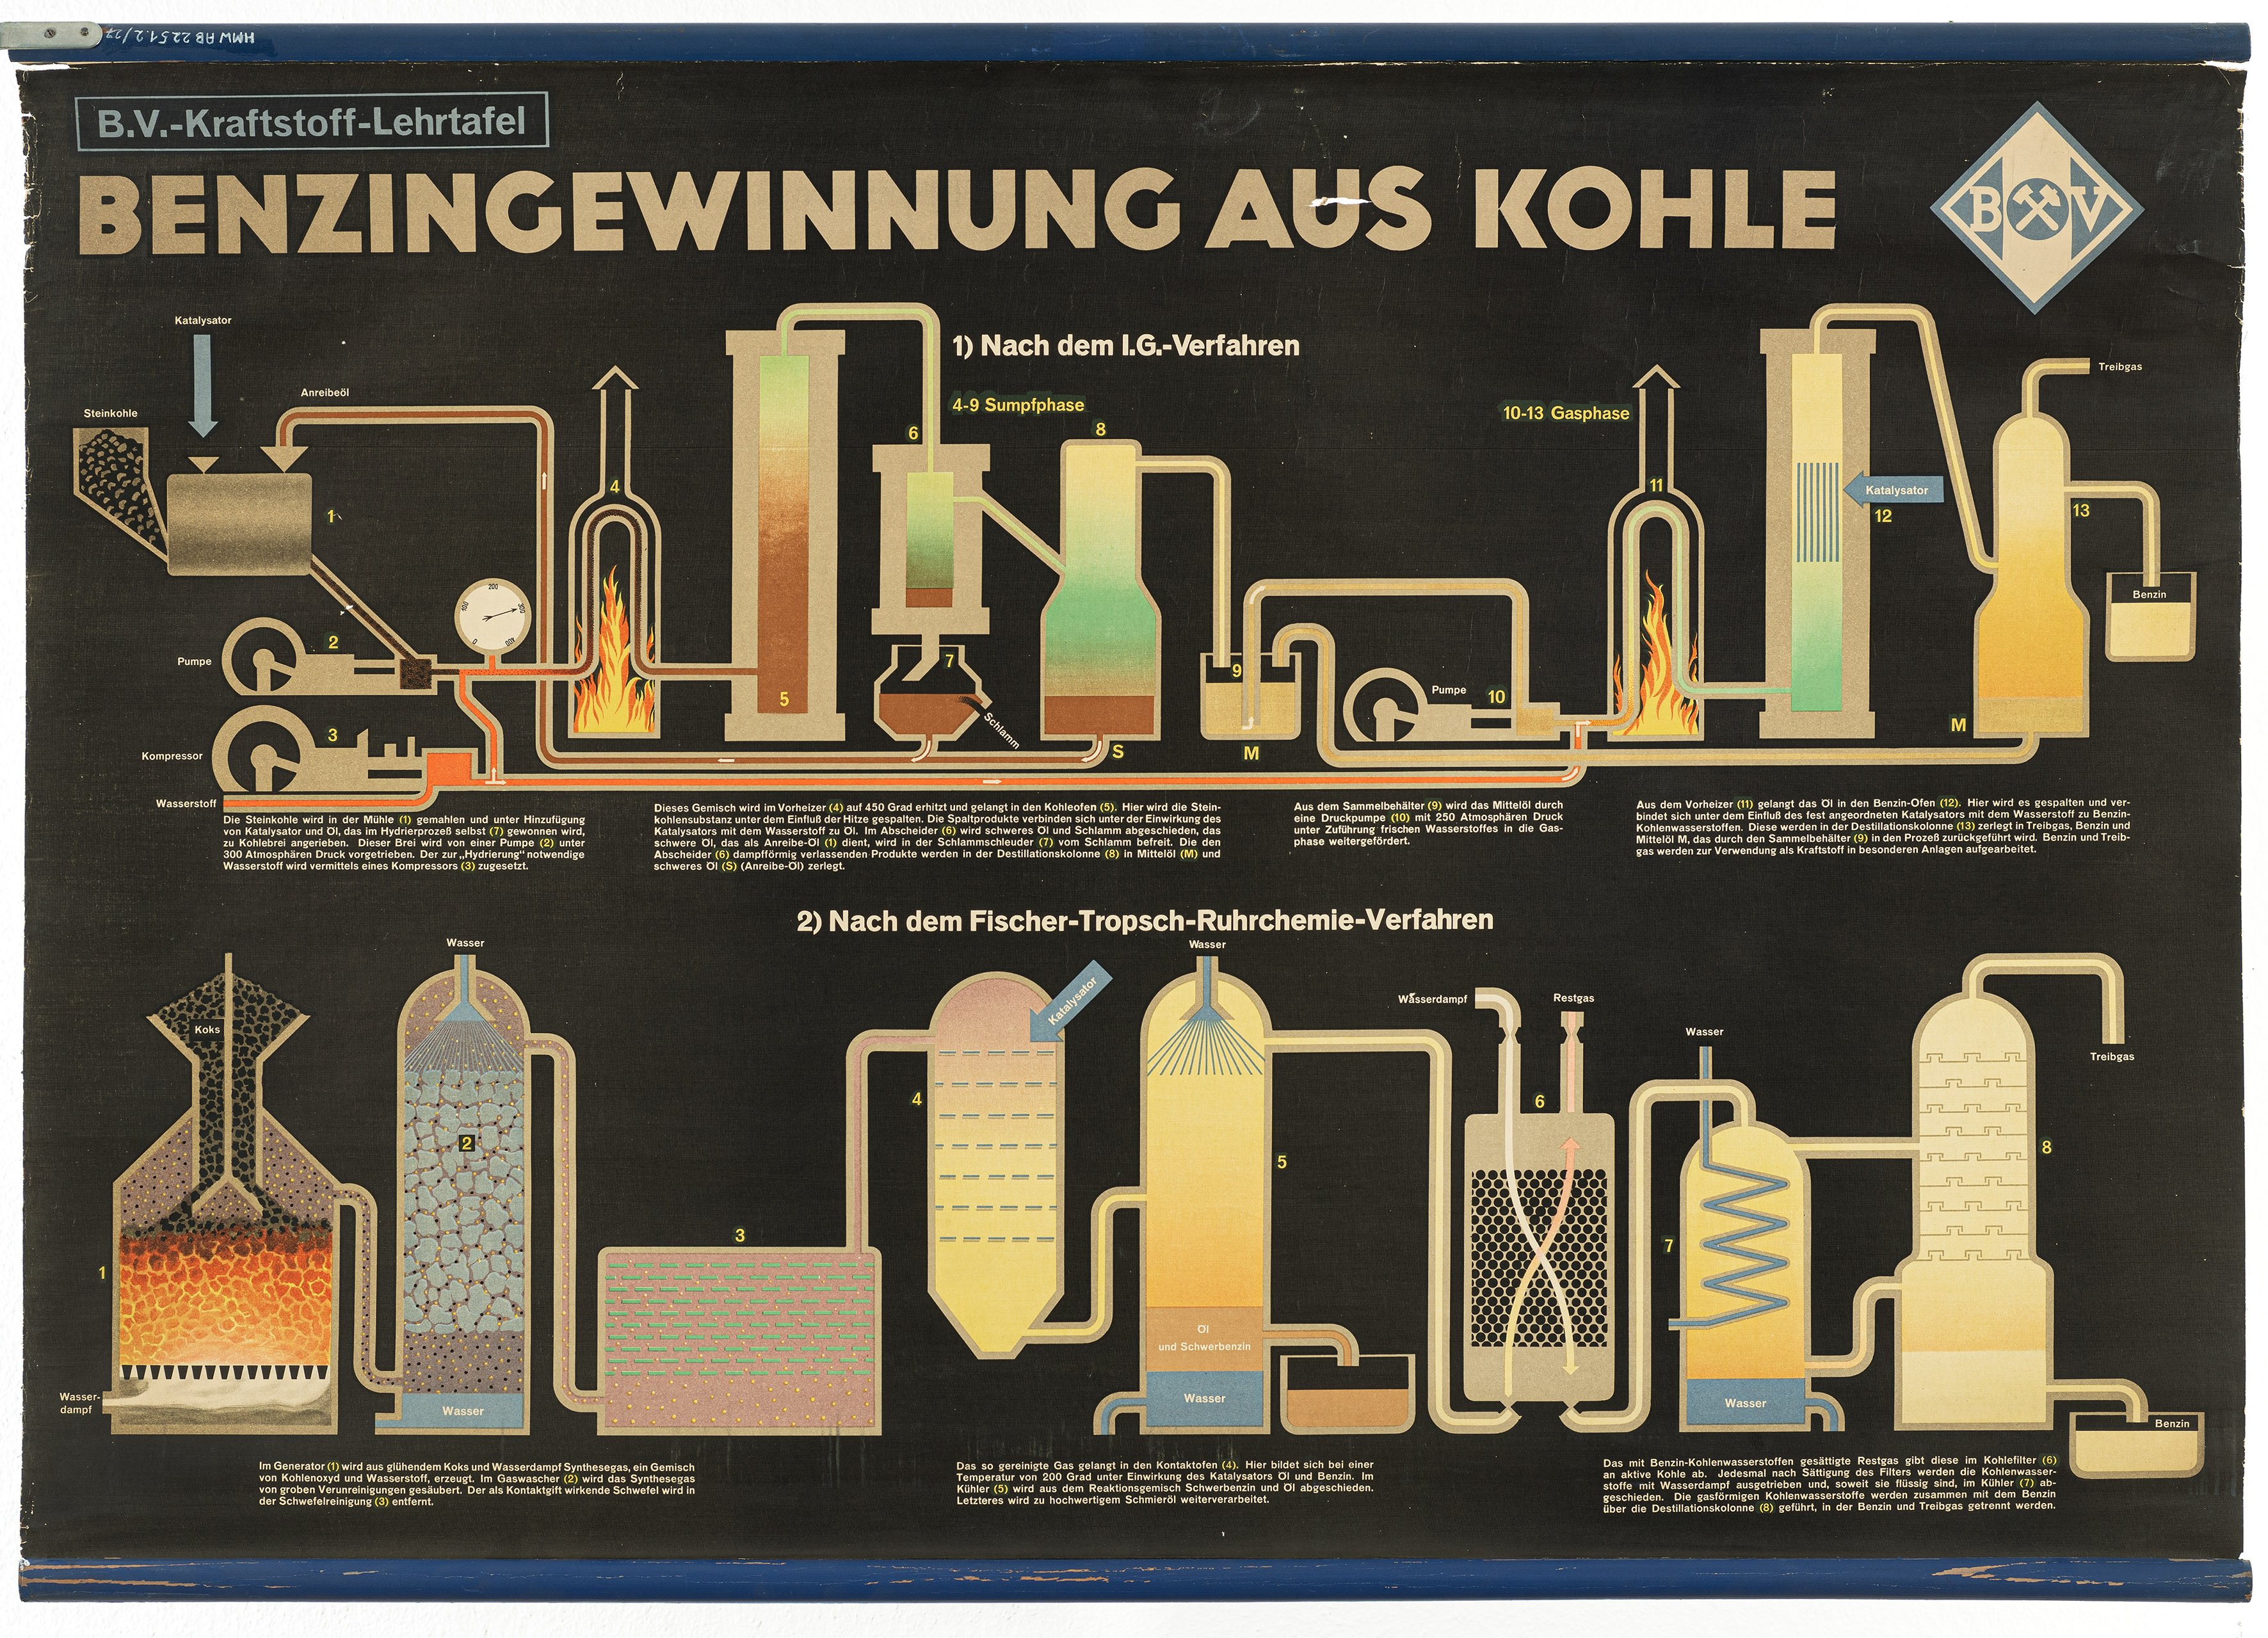 Schulwandbild "Benzingewinnung aus Kohle" (Mitte Museum/Bezirksamt Mitte von Berlin / Aral AG CC0)